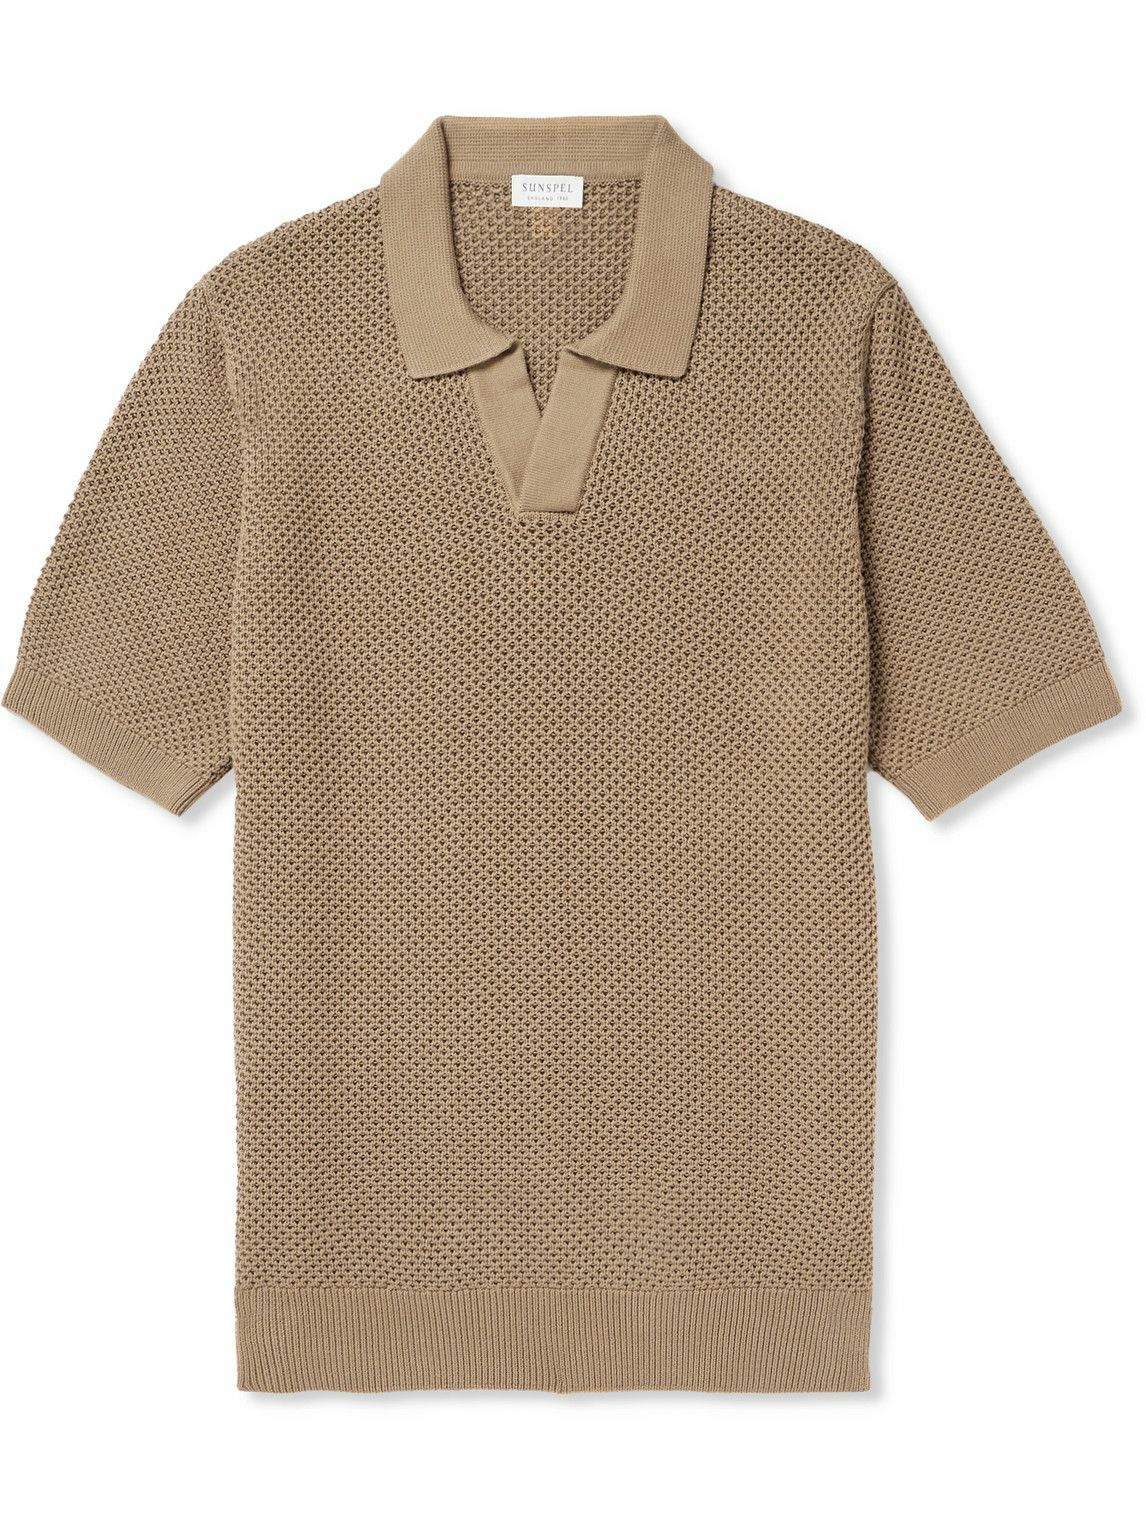 Sunspel - Honeycomb-Knit Cotton Polo Shirt - Brown Sunspel